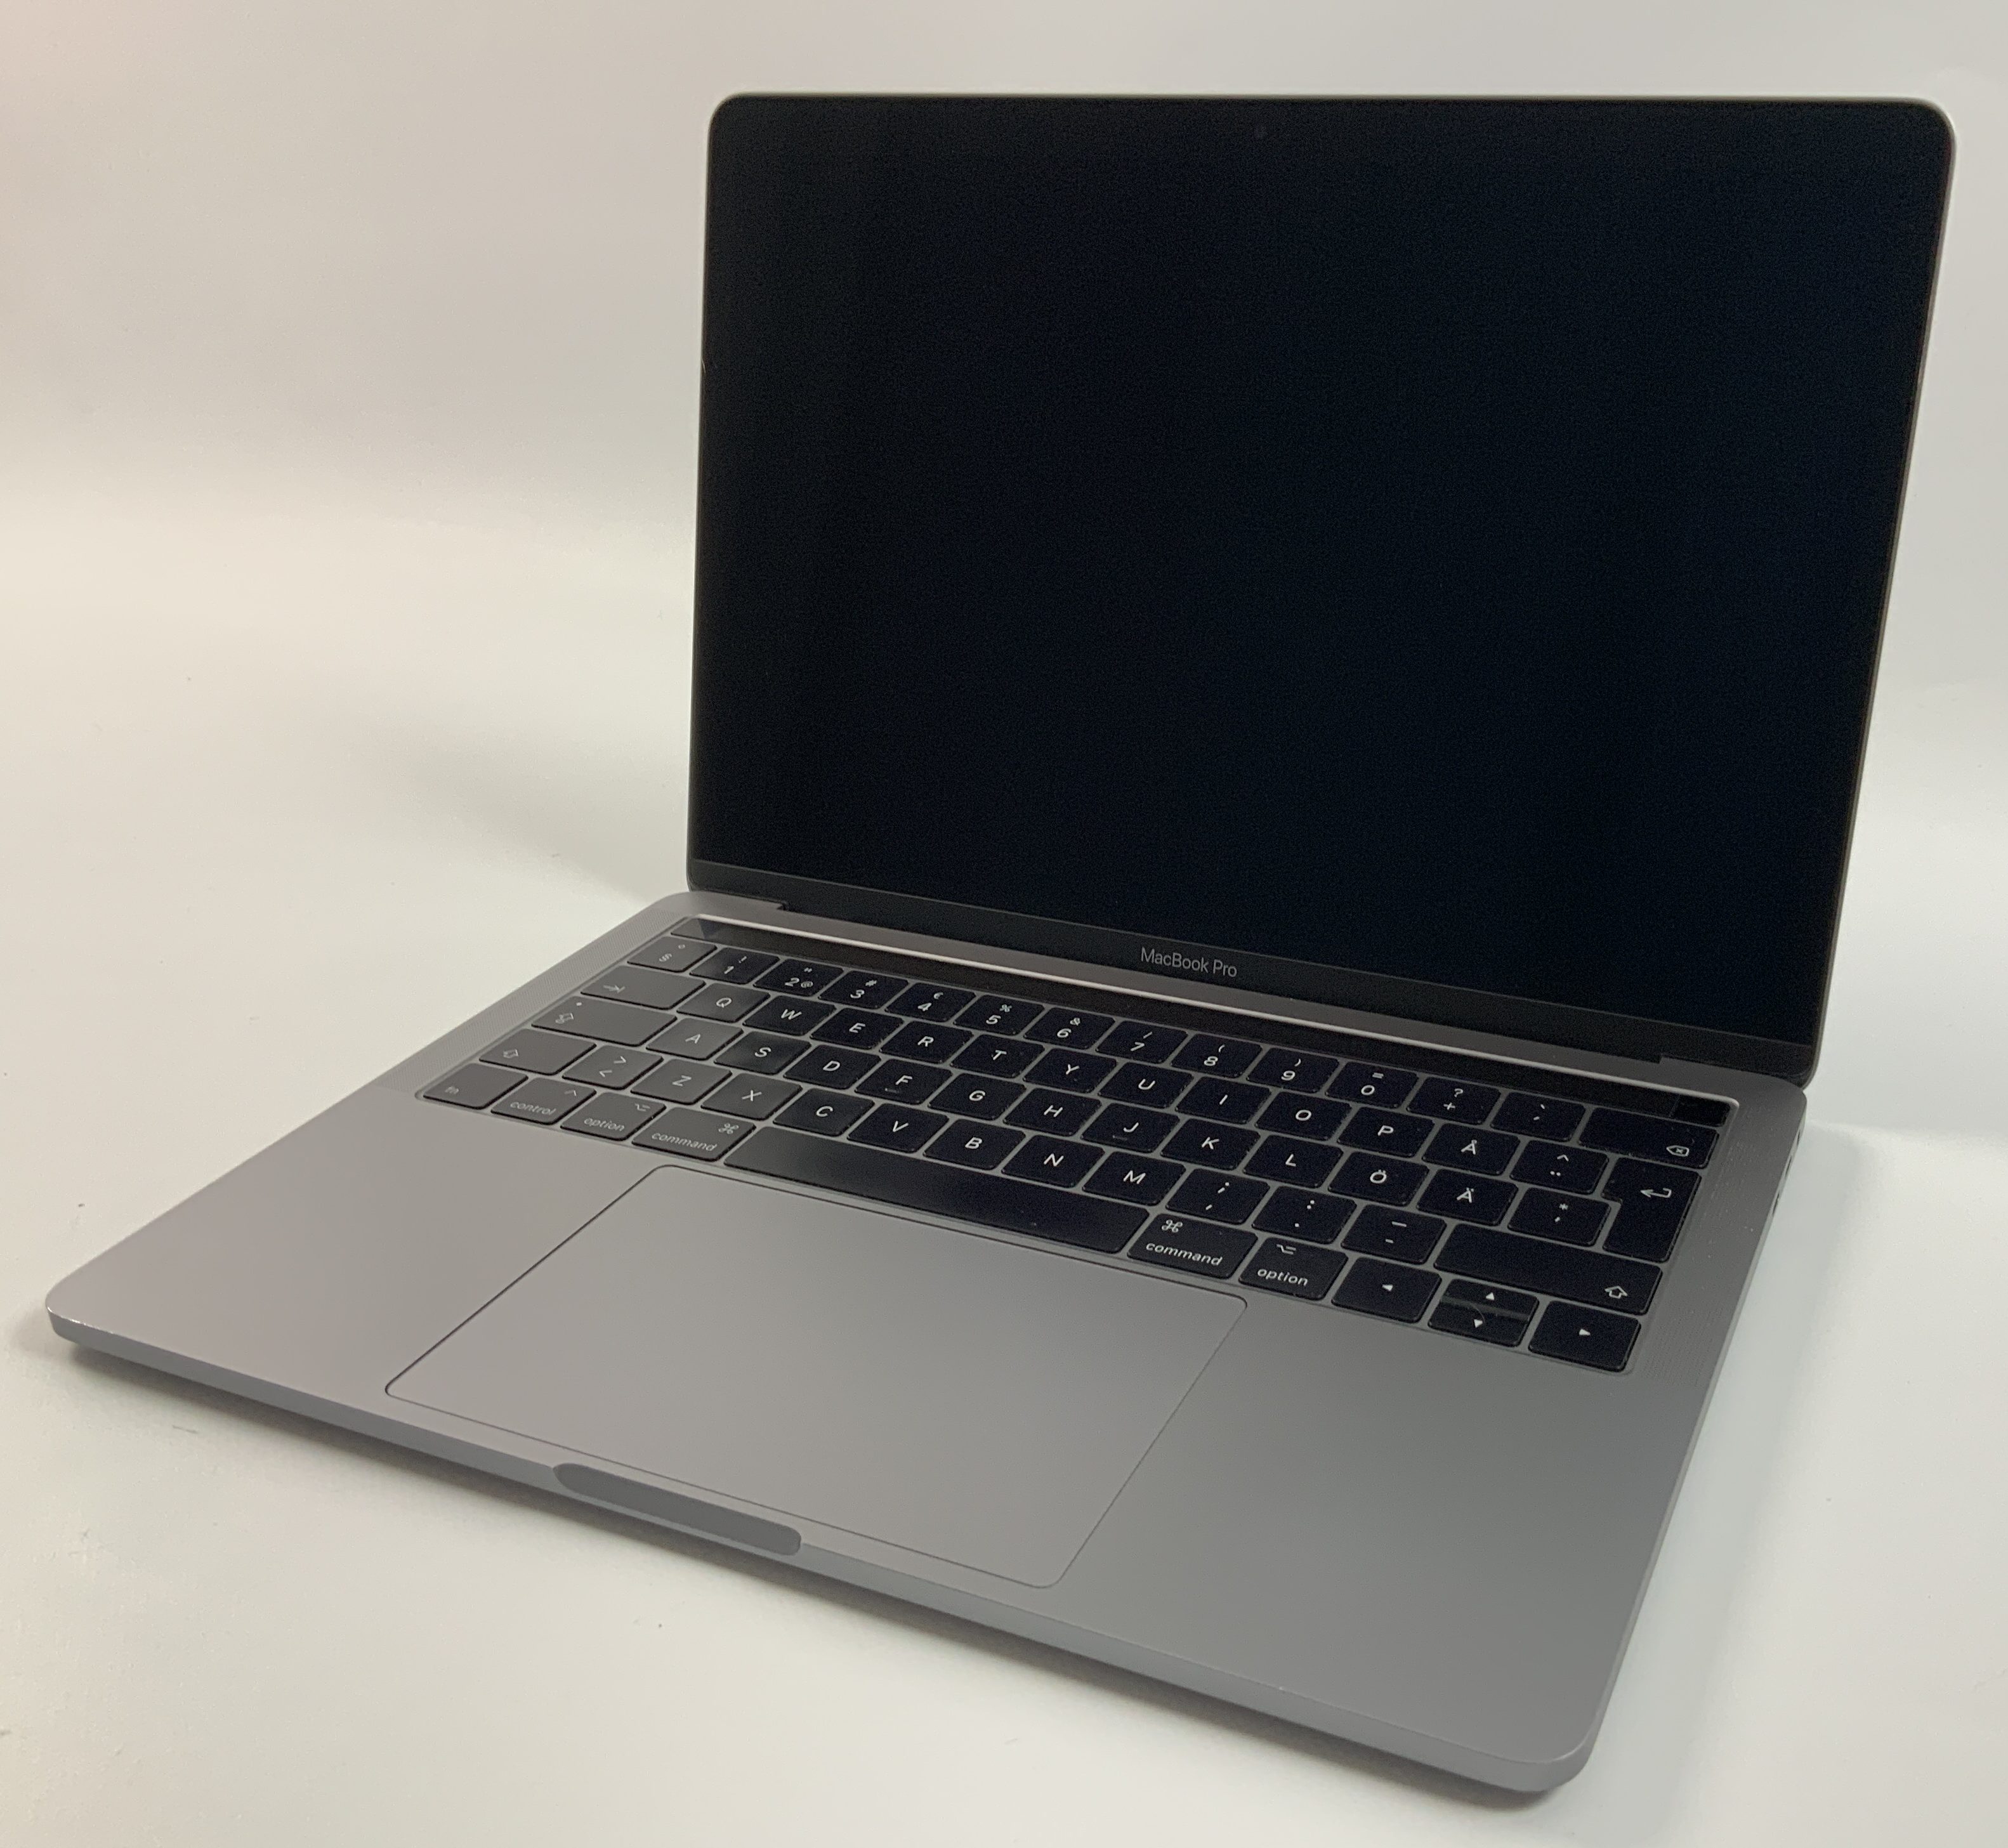 MacBook Pro 13" 4TBT Mid 2017 (Intel Core i5 3.1 GHz 8 GB RAM 256 GB SSD), Space Gray, Intel Core i5 3.1 GHz, 8 GB RAM, 256 GB SSD, obraz 1